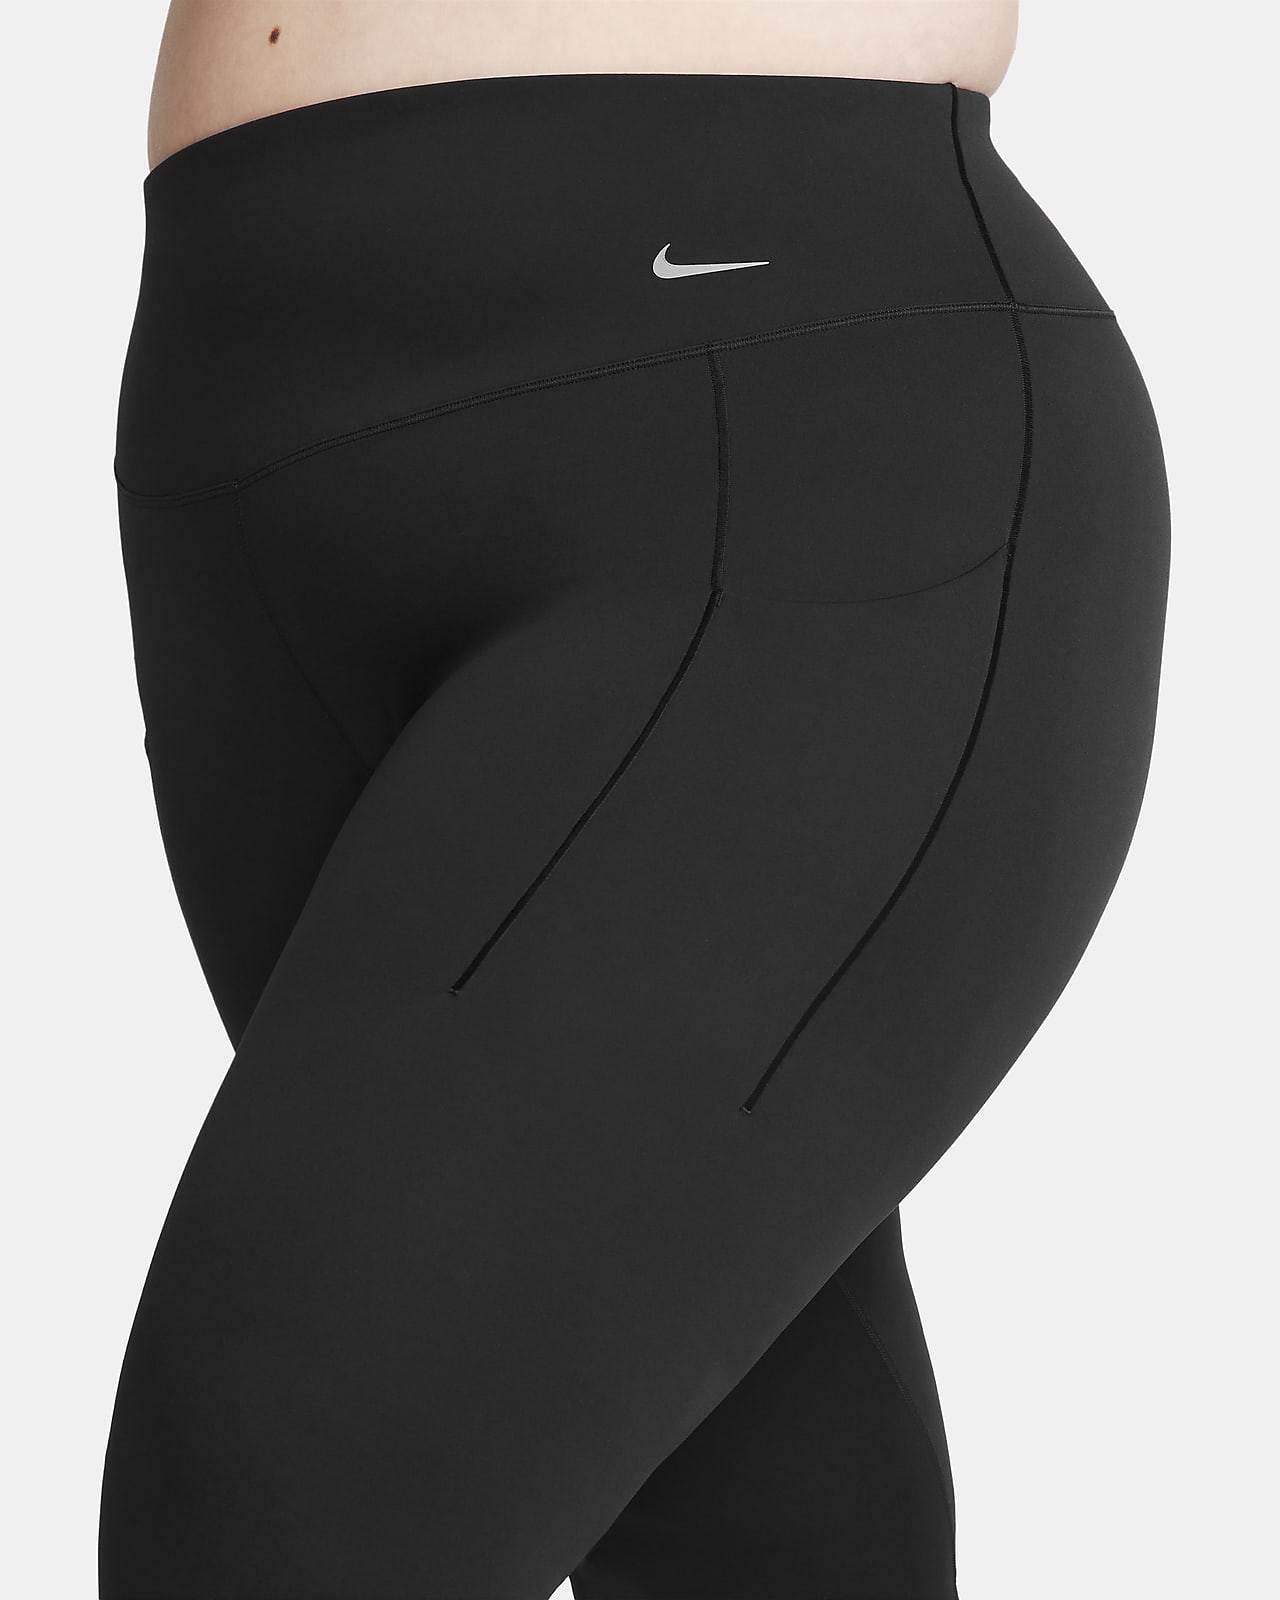 Nike Essential dri fit plus sz capris 1X 2X 3X  Leggings are not pants,  Clothes design, Fashion design